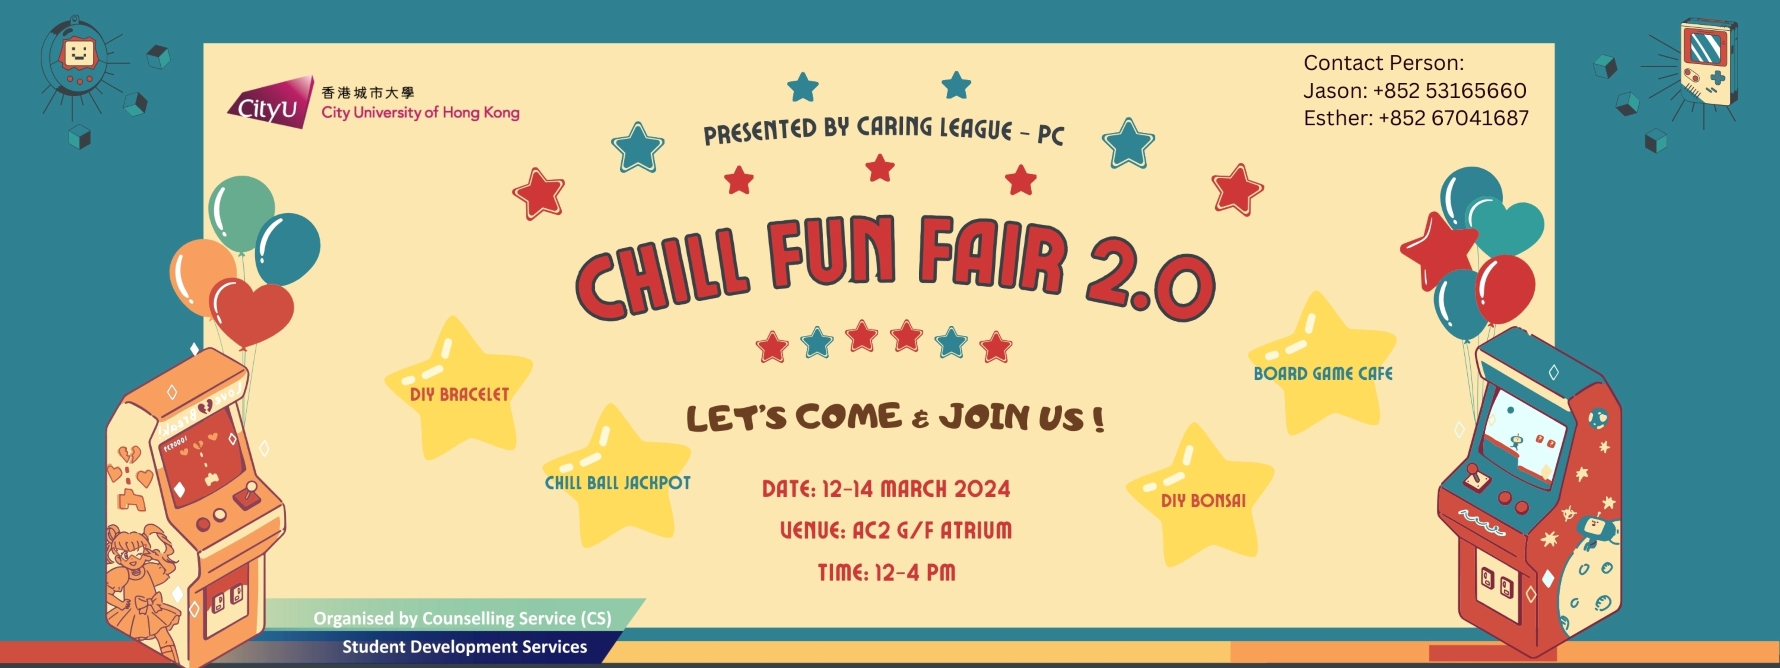 Chill Fun Fair 2.0